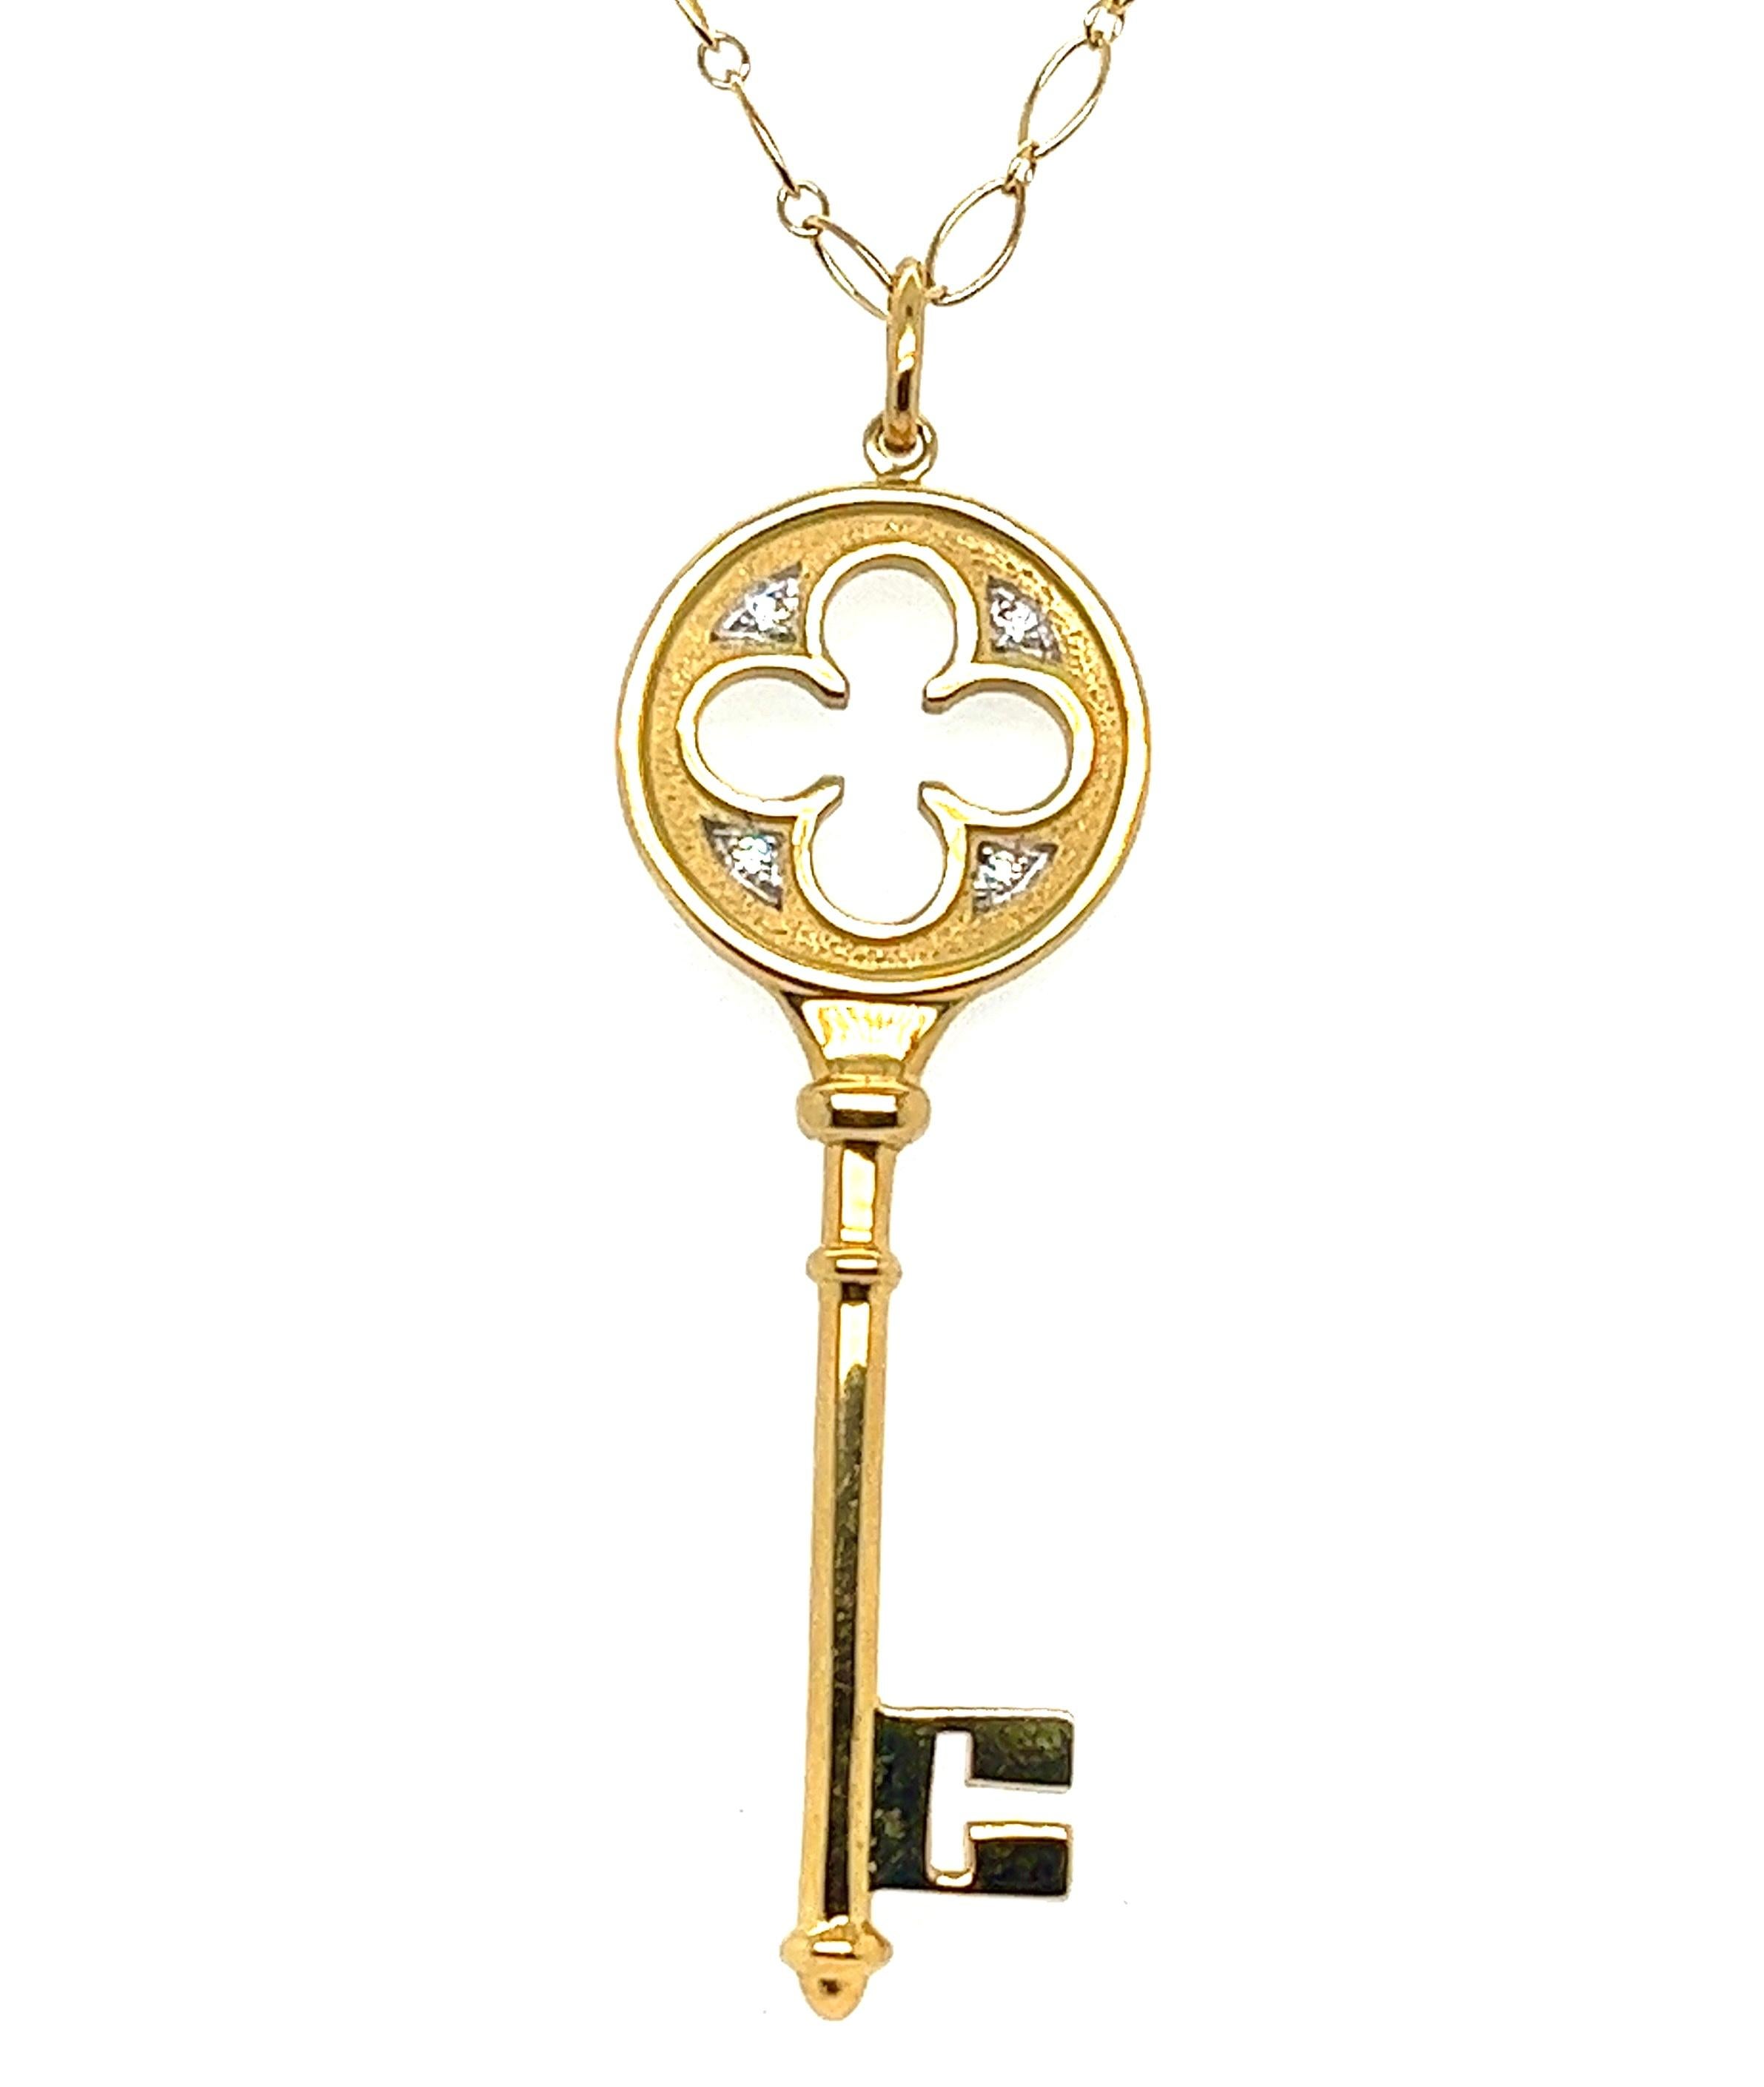 lucy capricorn key